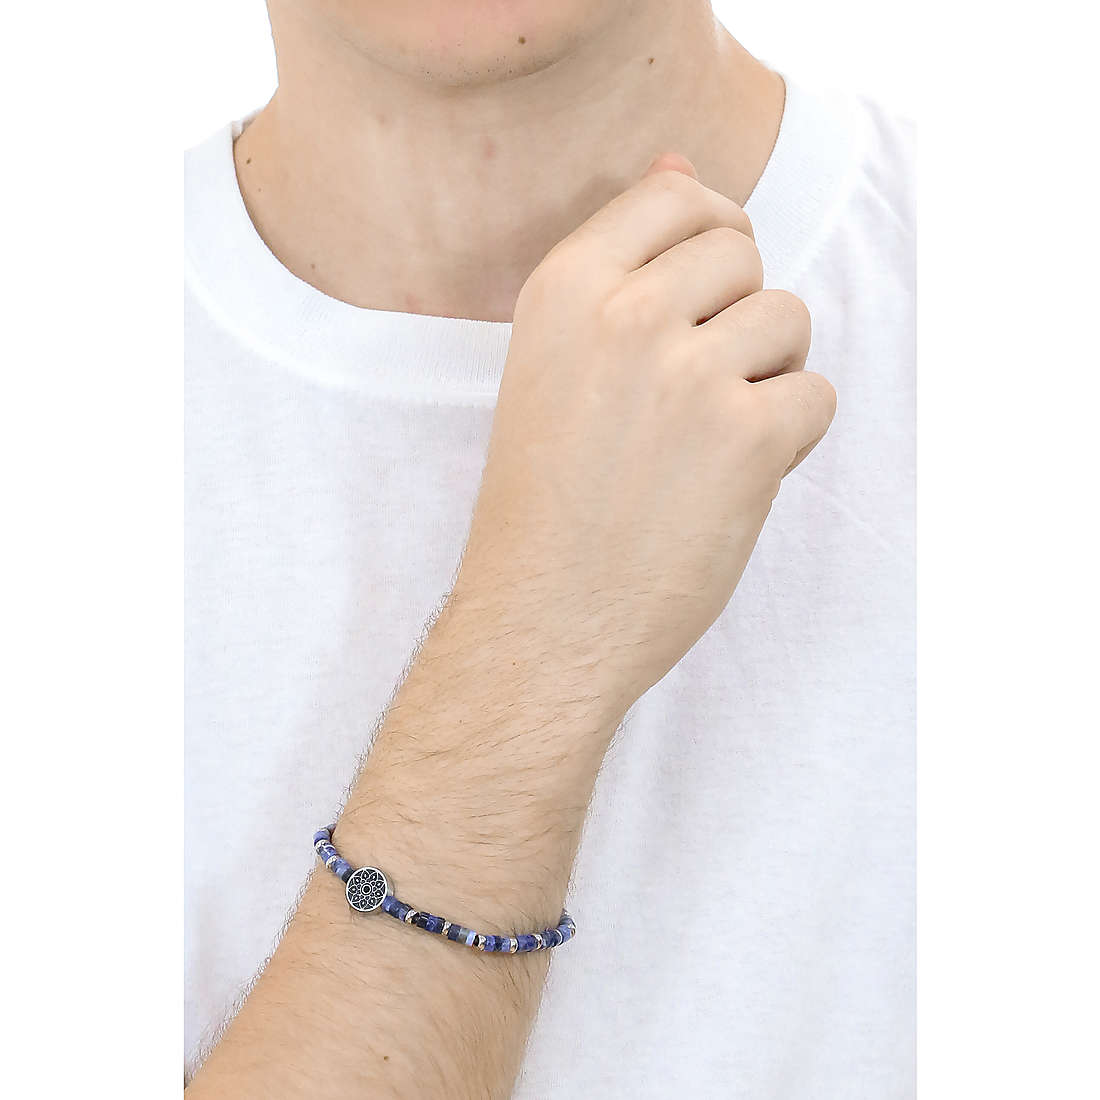 Kidult bracelets Spirituality man 732052 wearing